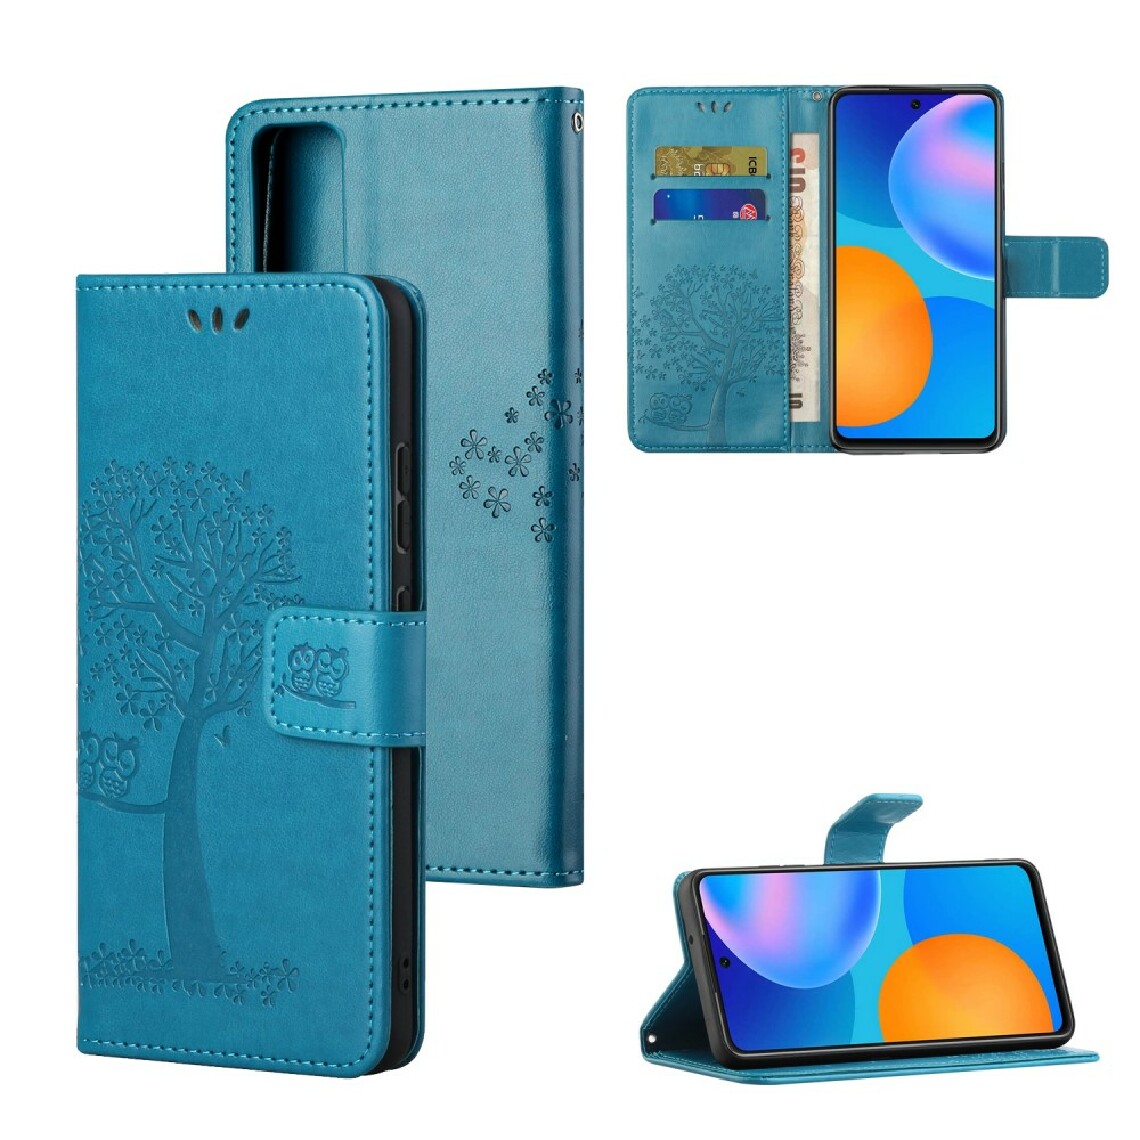 Other - Etui en PU impression chouette arboricole bleu pour votre Huawei Honor 10X Lite - Coque, étui smartphone